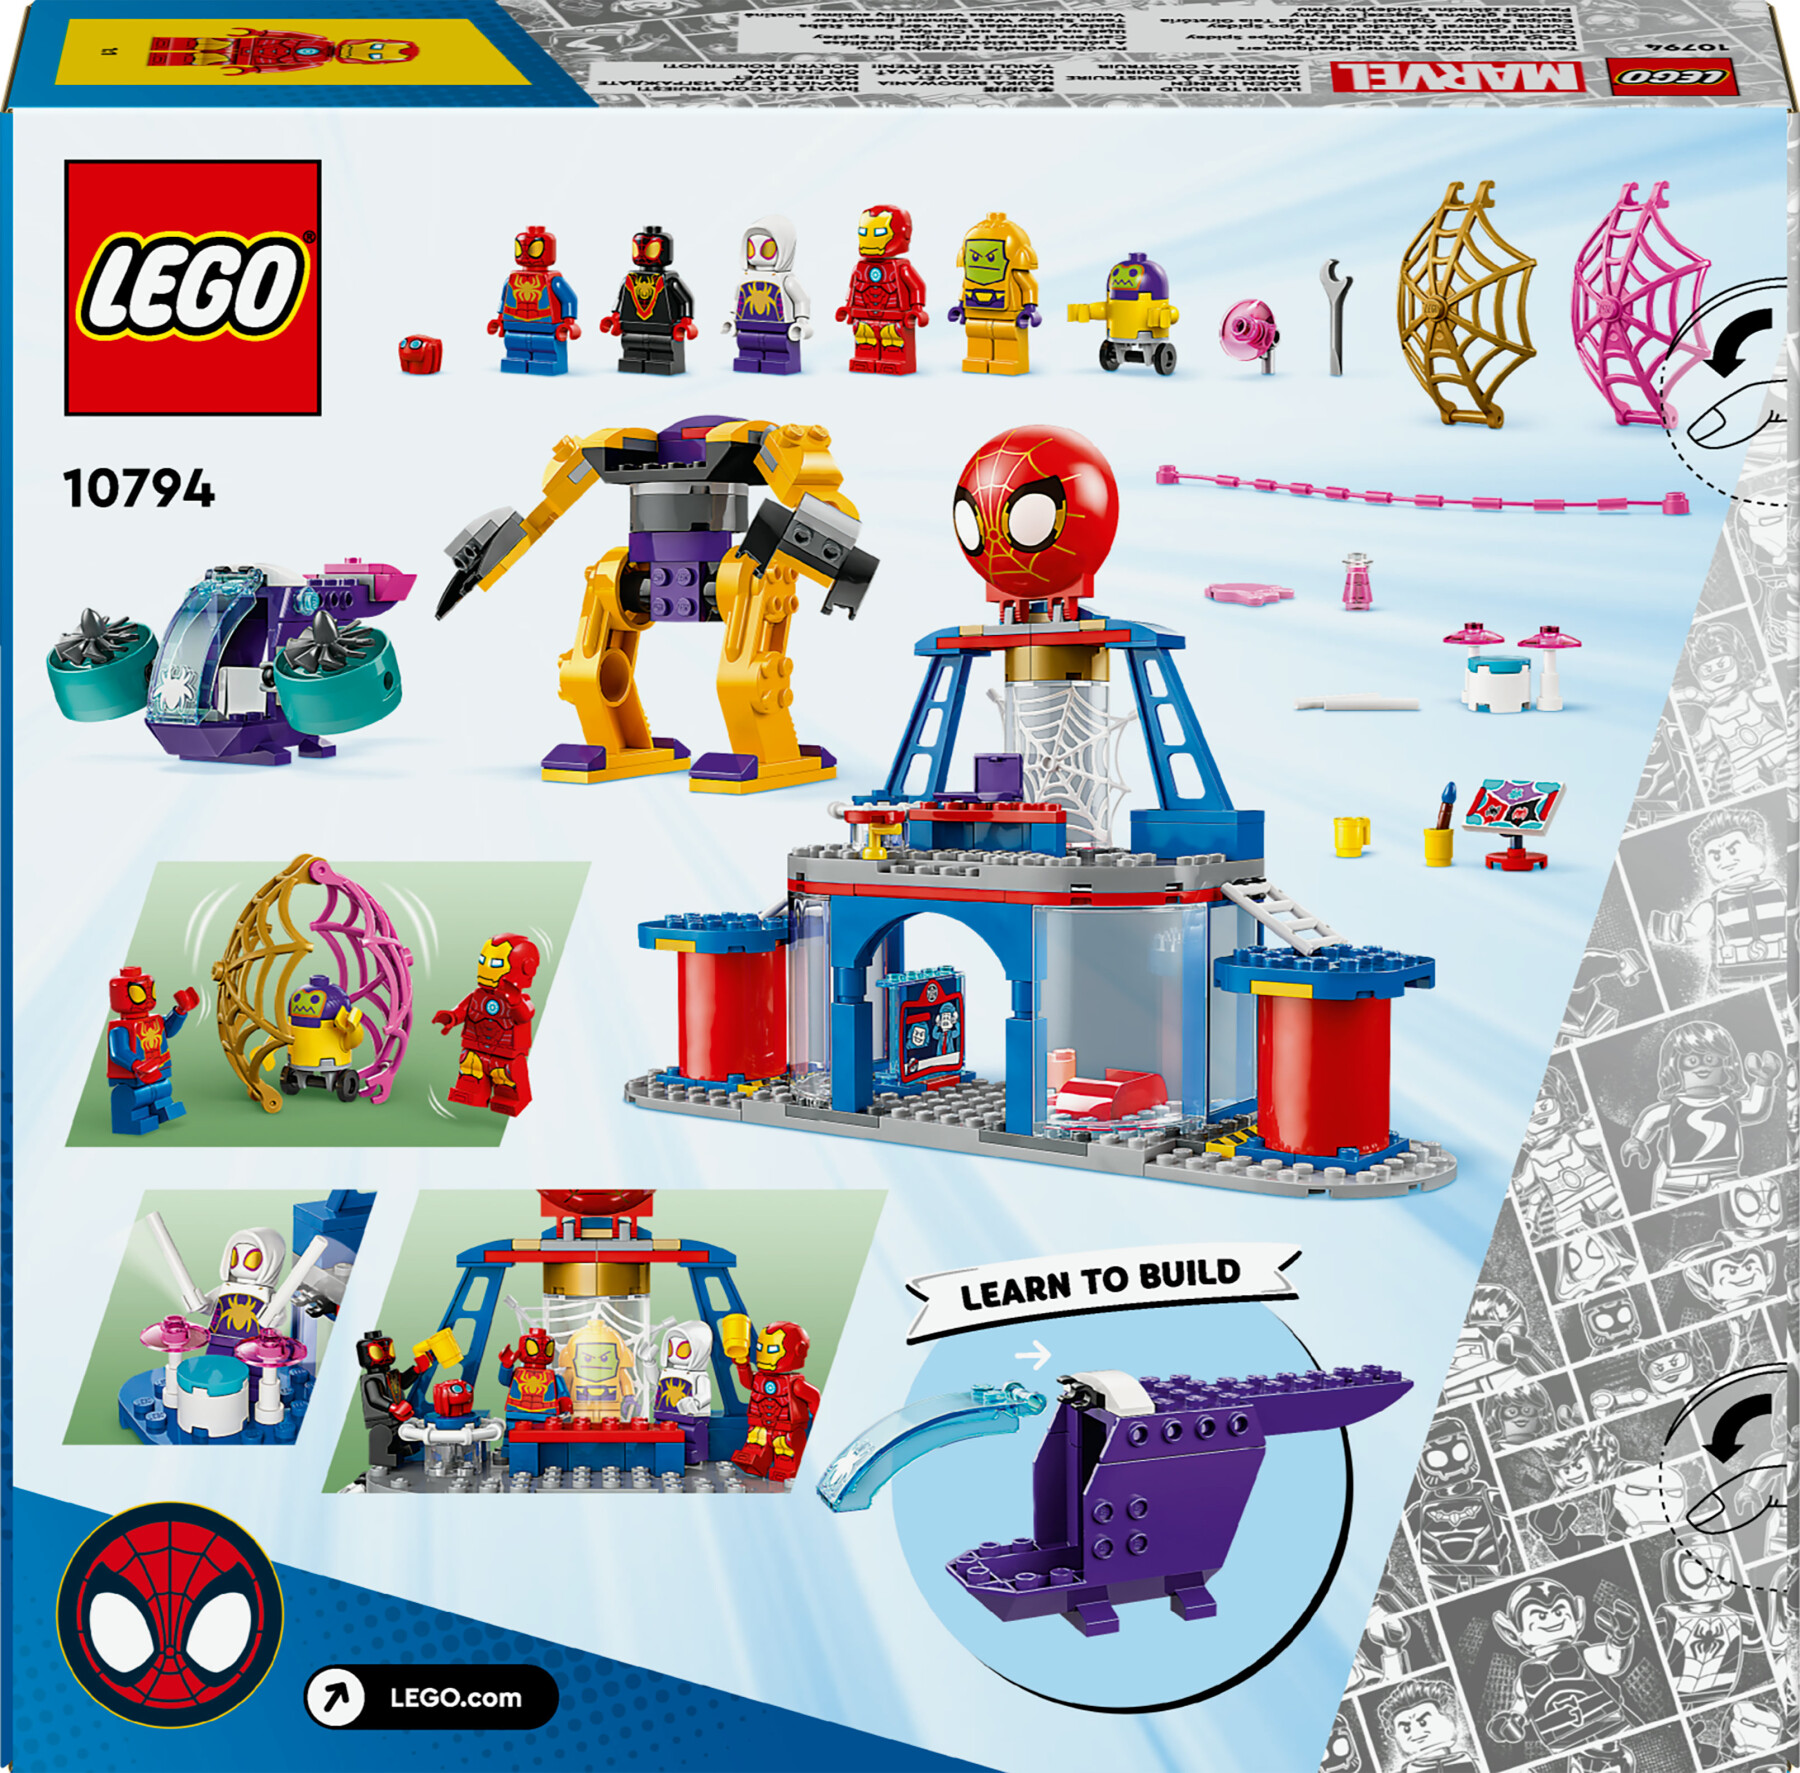 Lego spidey e i suoi fantastici amici 10794 quartier generale di team spidey, giochi bambini 4+ con mech, veicolo e supereroi - LEGO SPIDERMAN, SPIDEY